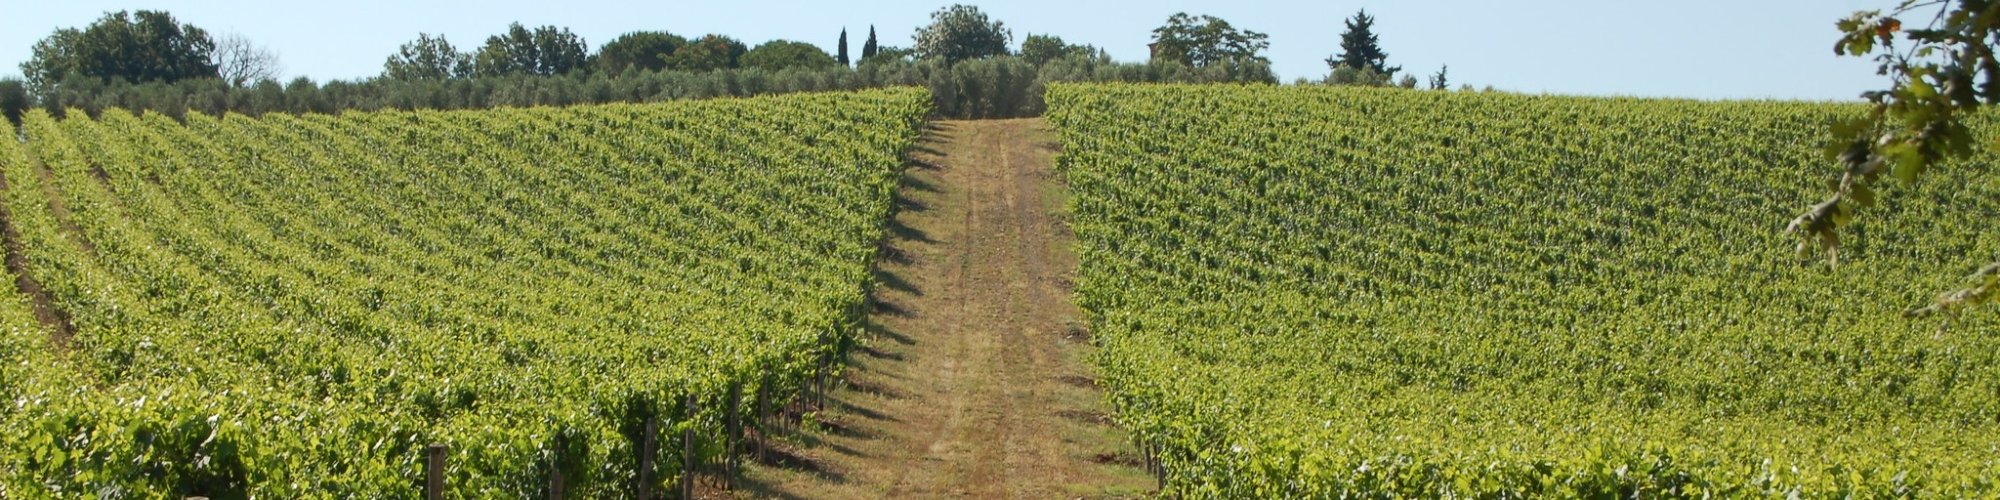 Los vinos DOCG de Toscana